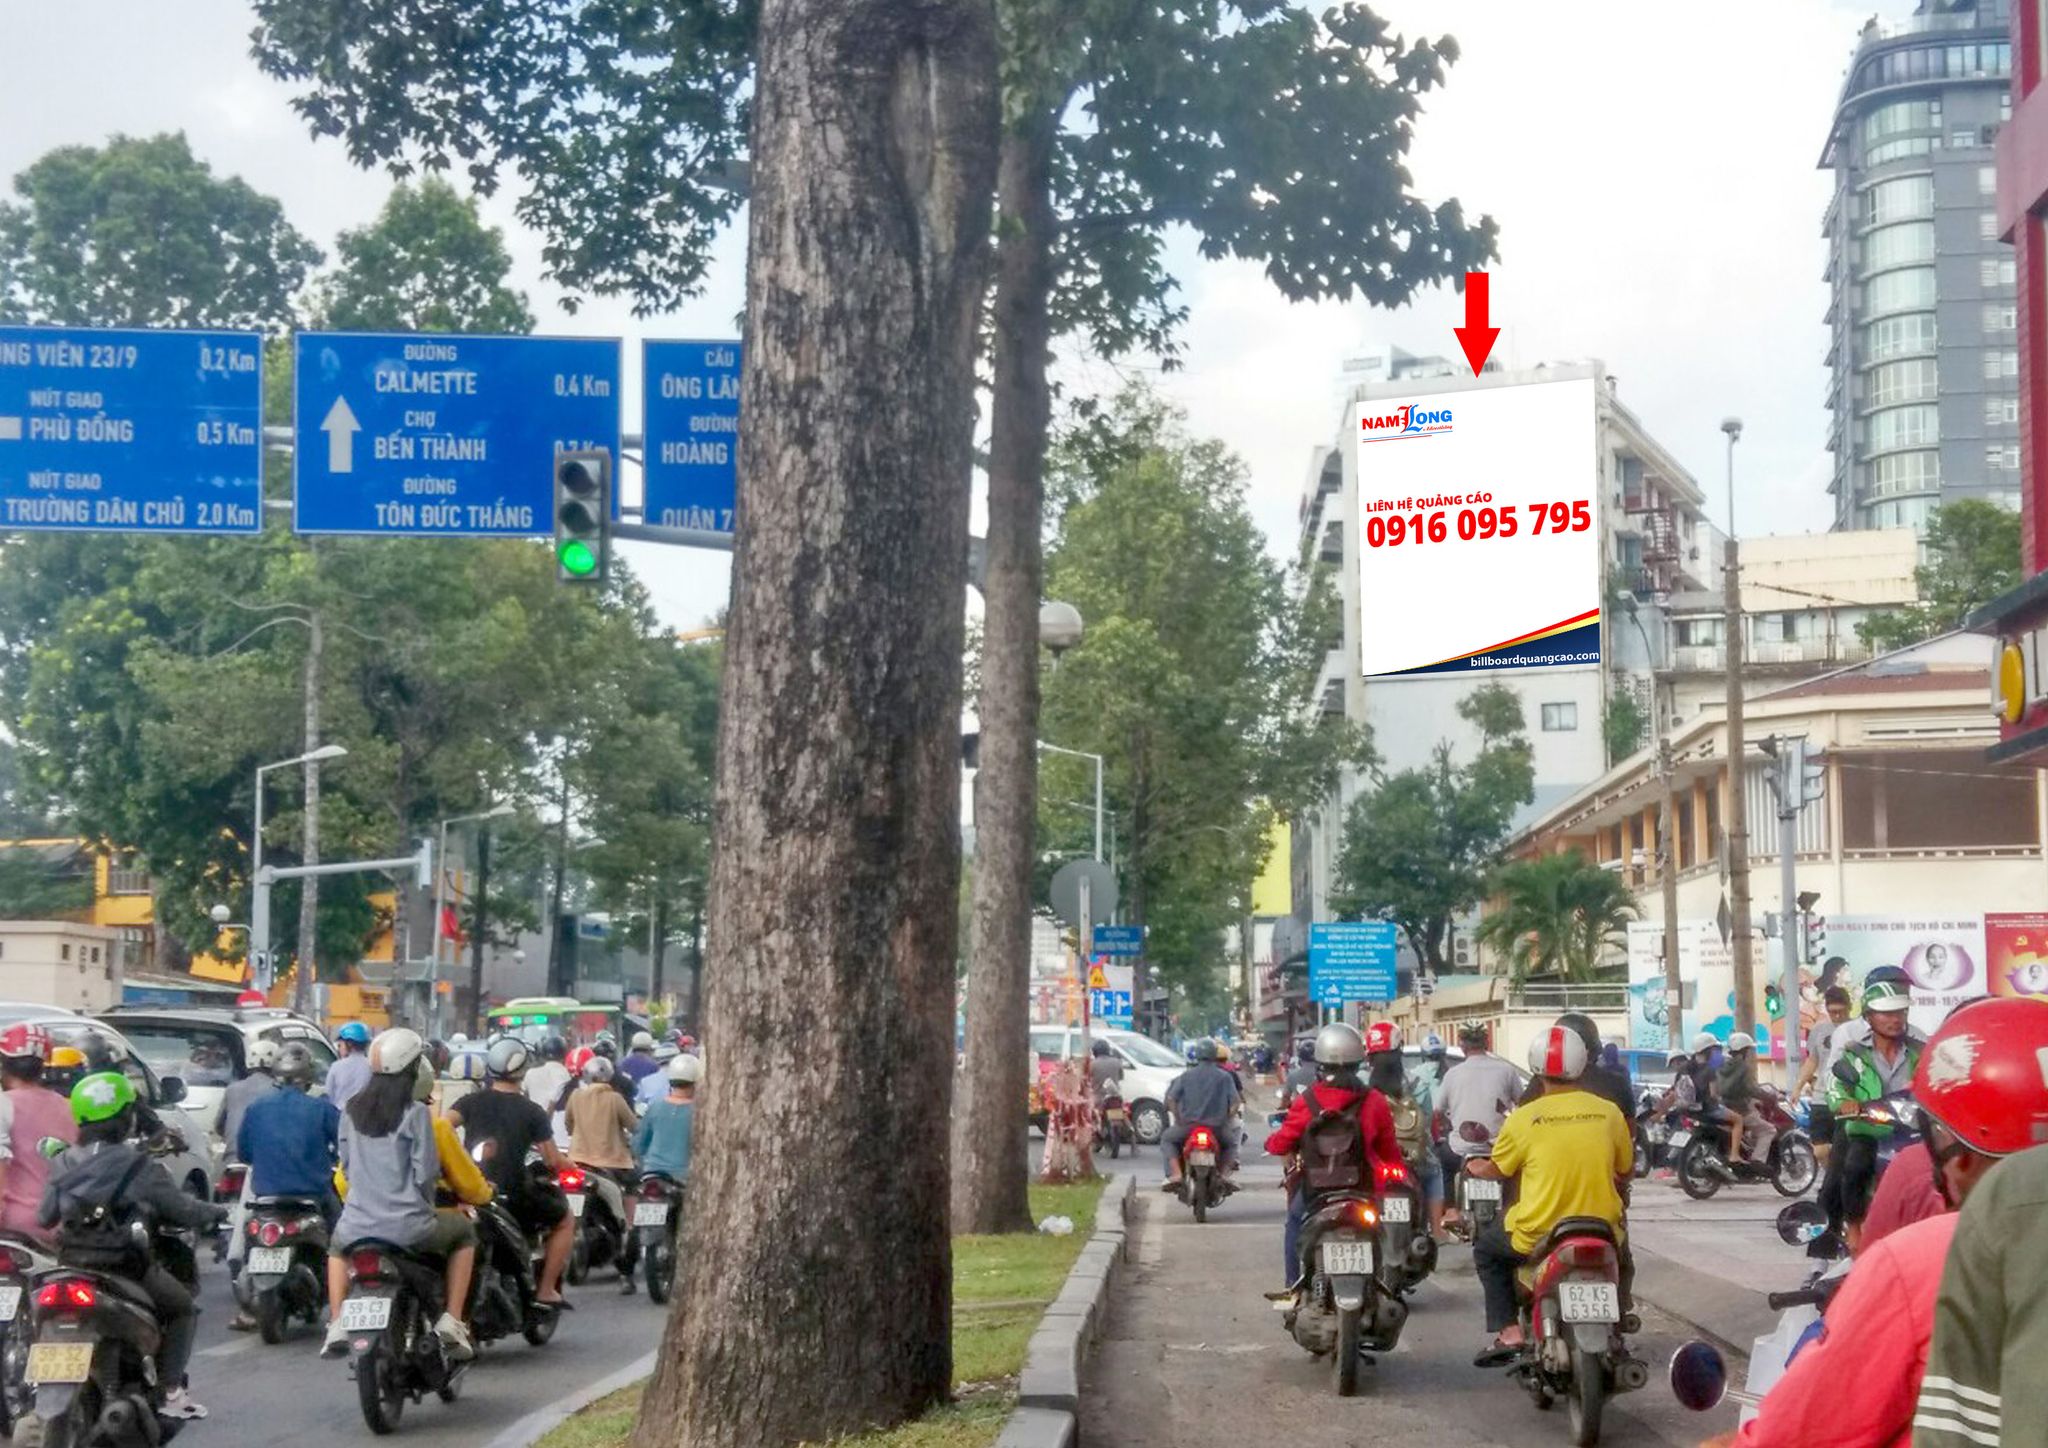 Bảng quảng cáo ngoài trời tại Ngã tư Trần Hưng Đạo - Nguyễn Thái Học